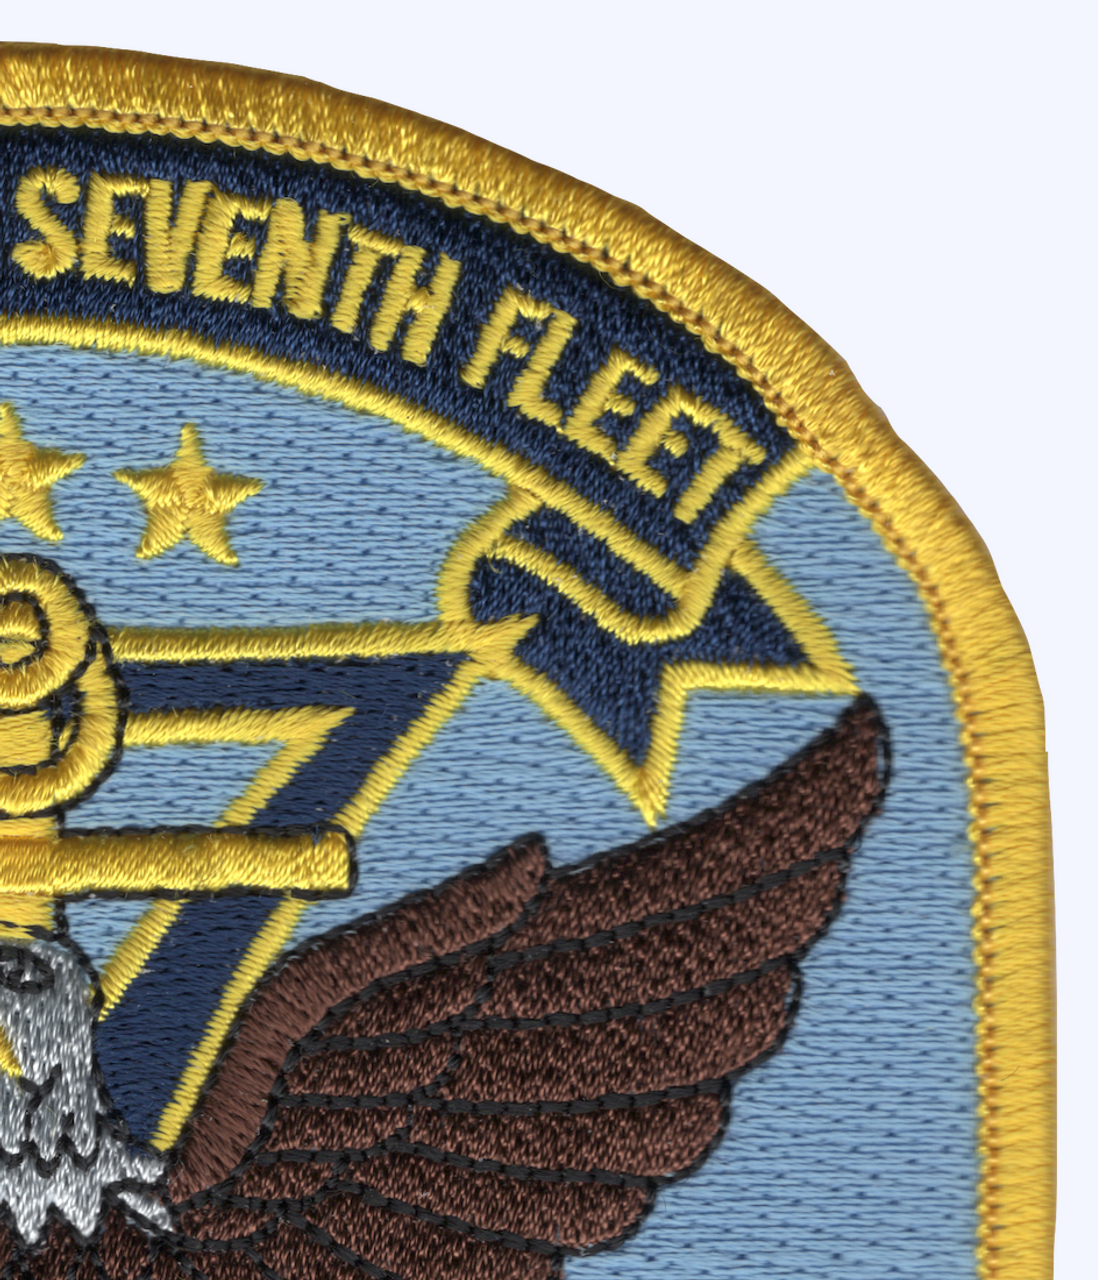 U.S. SEVENTH Fleet